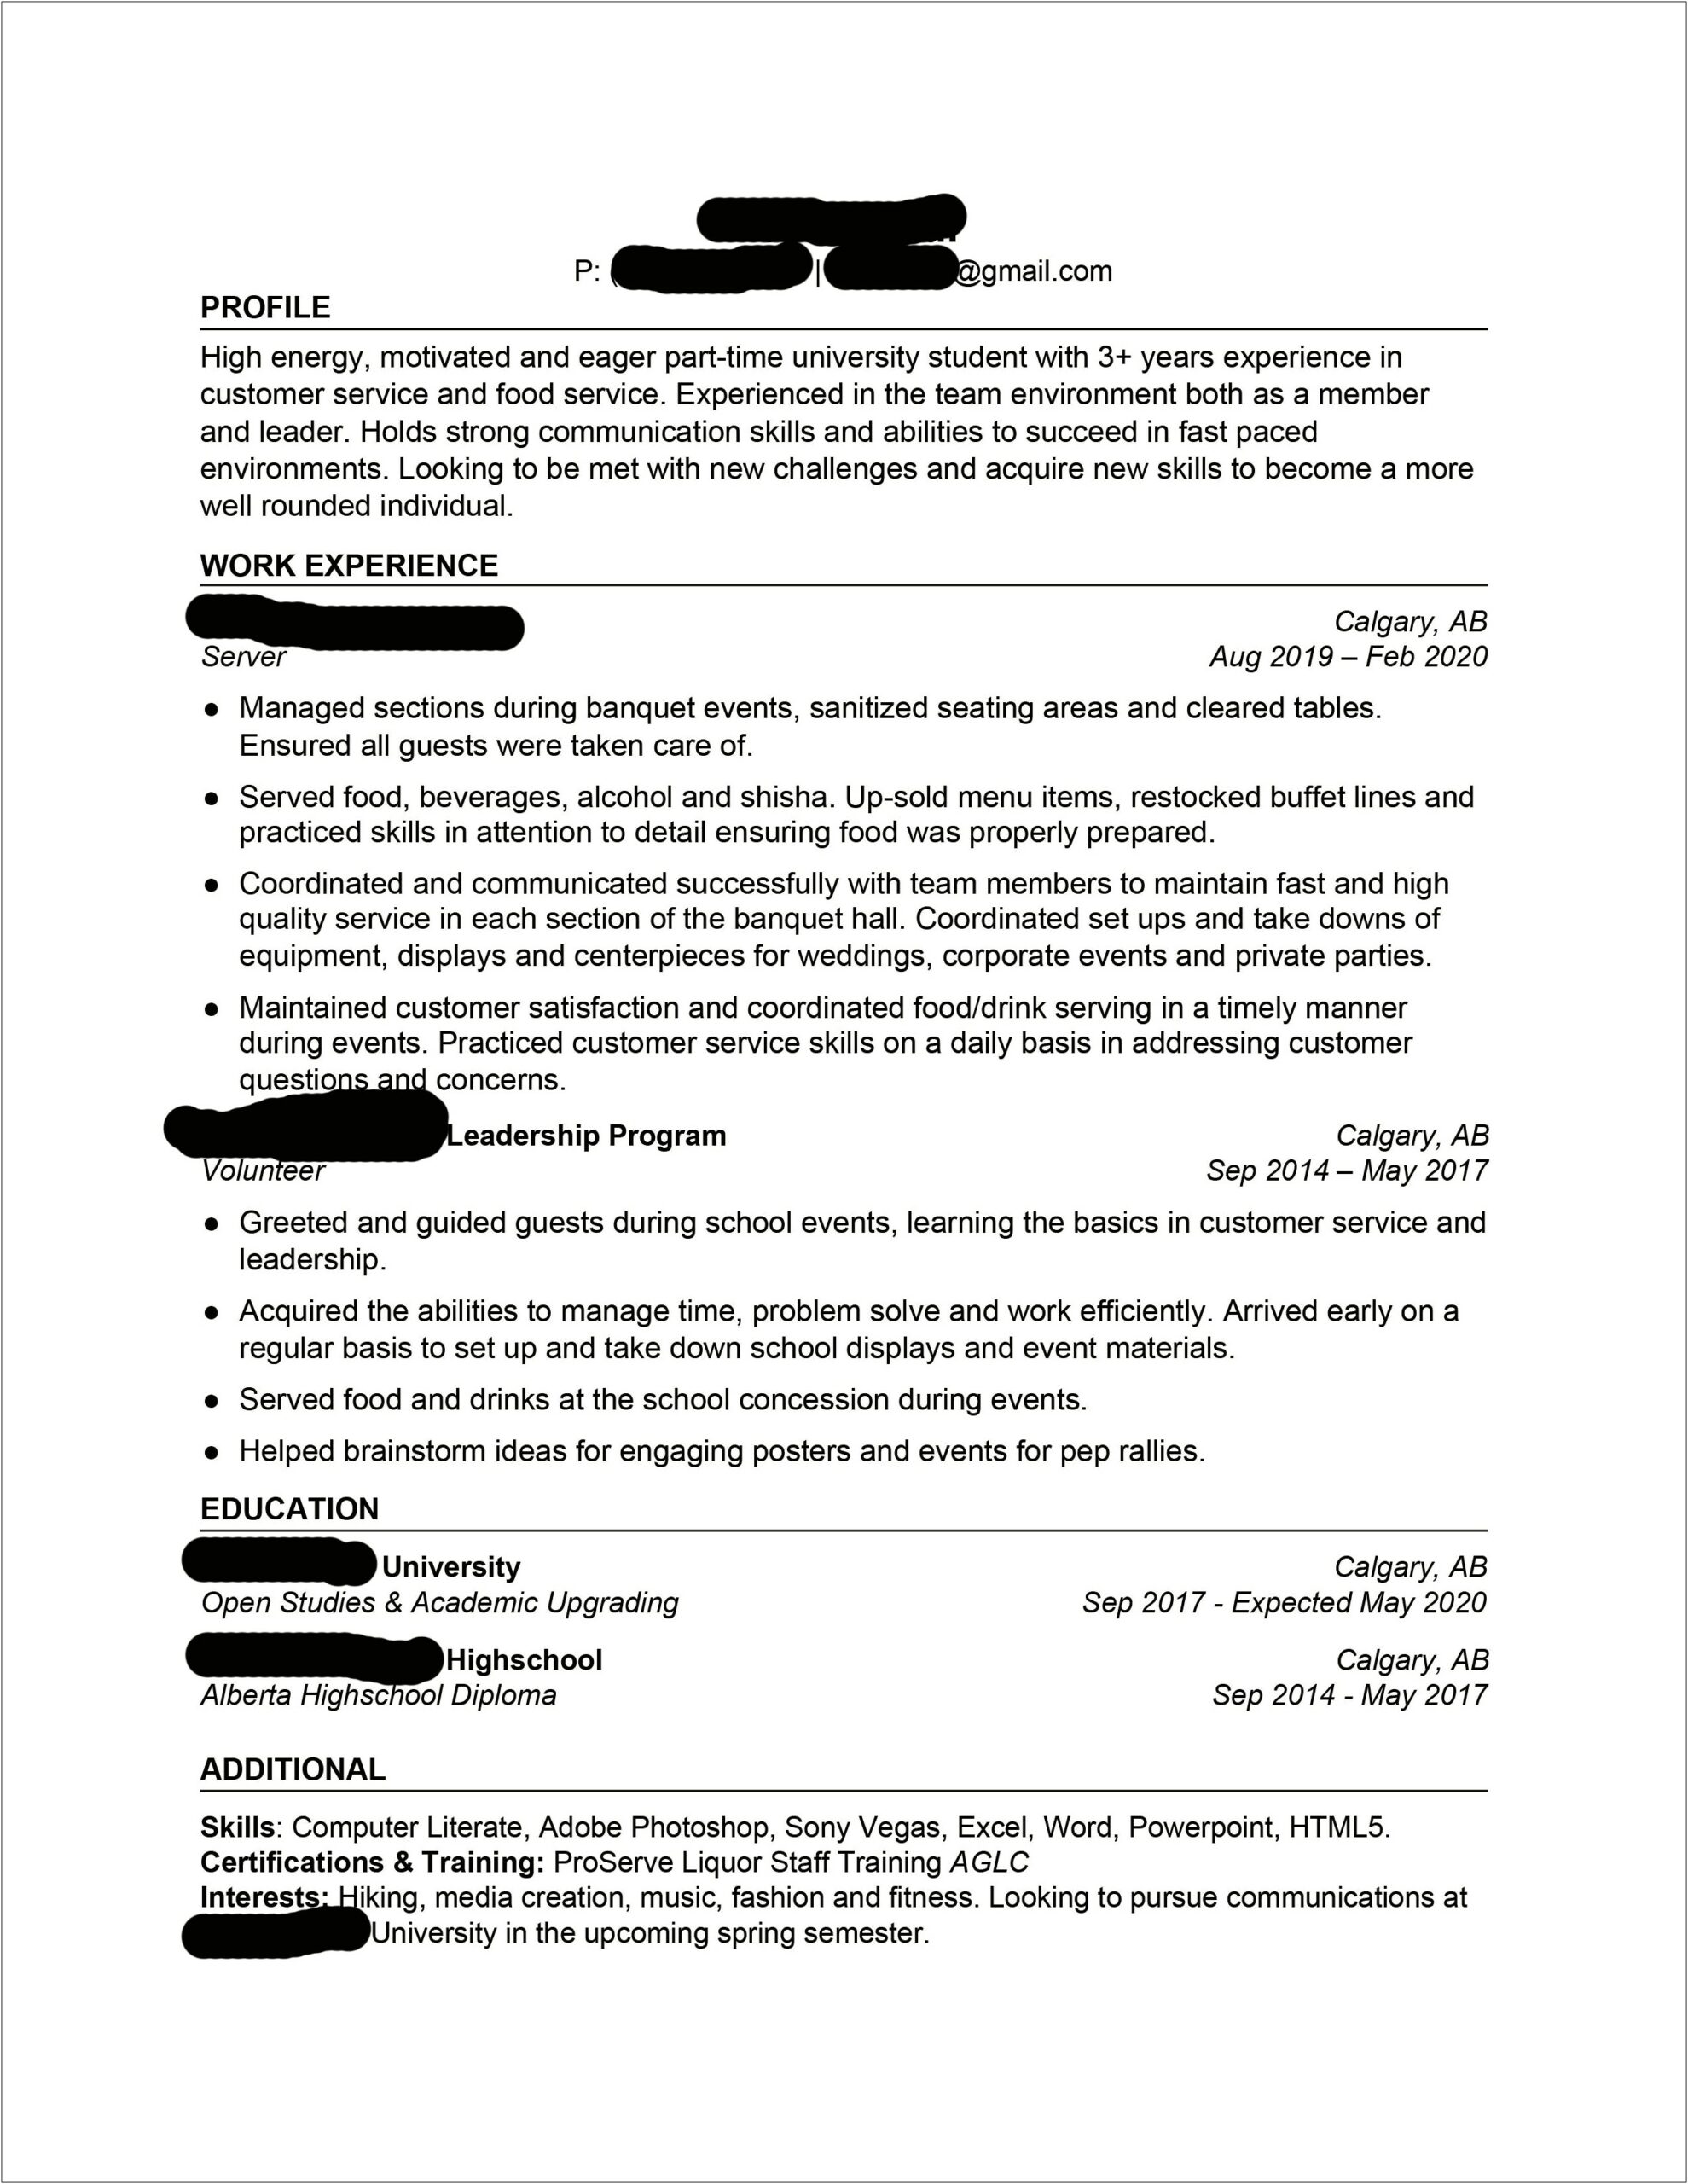 Computer Skills To List On Resume 2017